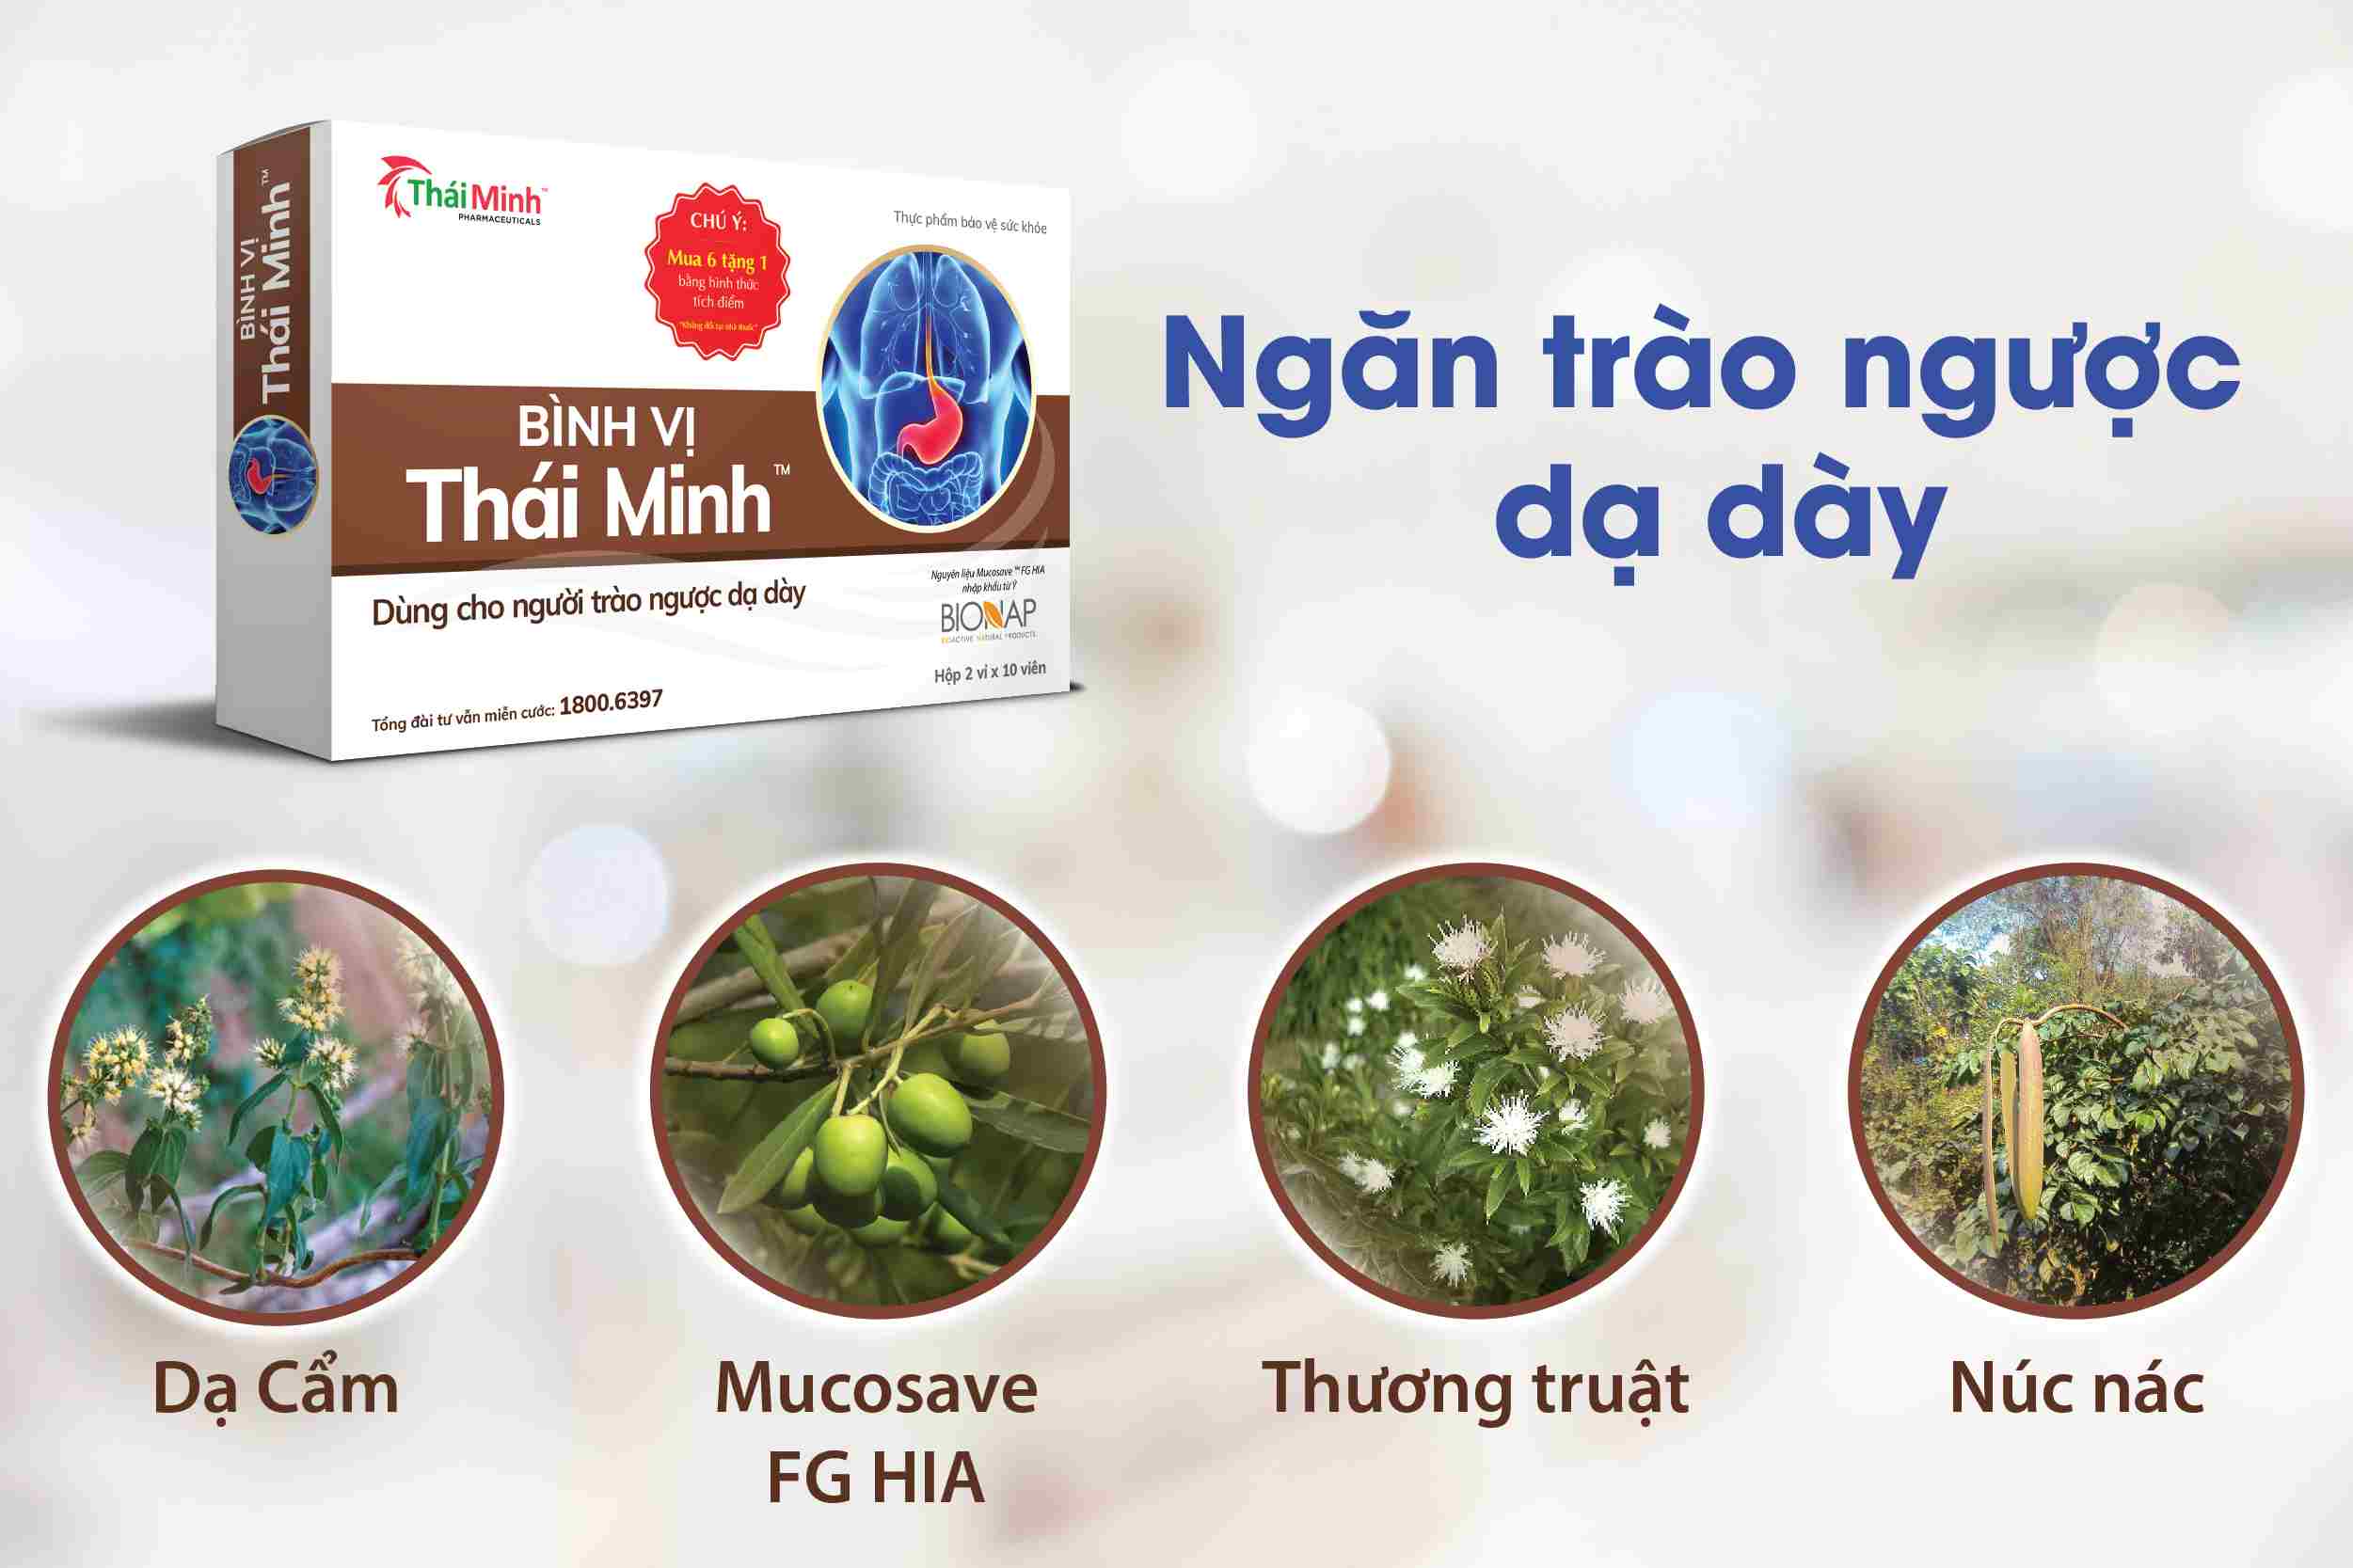 Bình Vị Thái Minh - Giải pháp bệnh trào ngược dạ dày 1